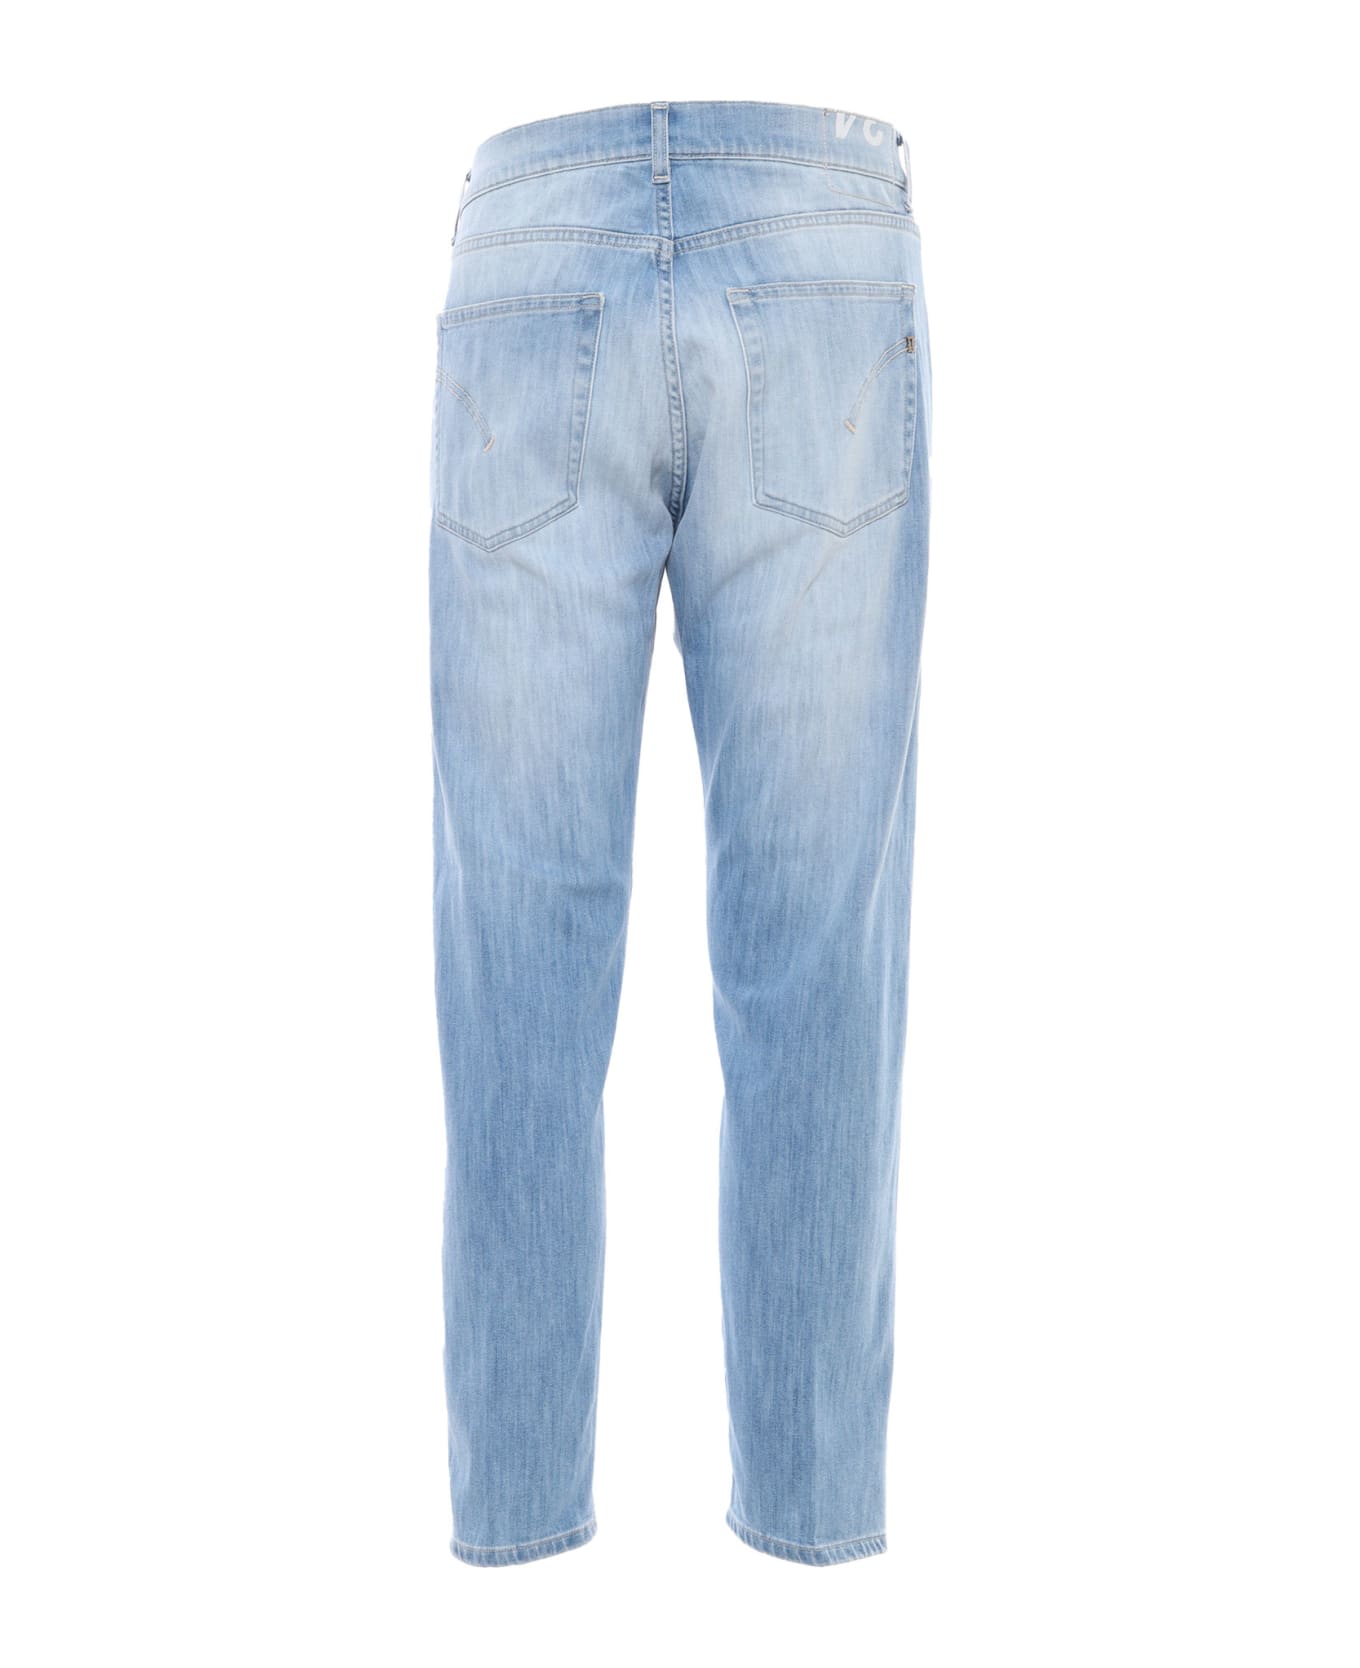 Dondup Washed Light Blue Jeans - Denim